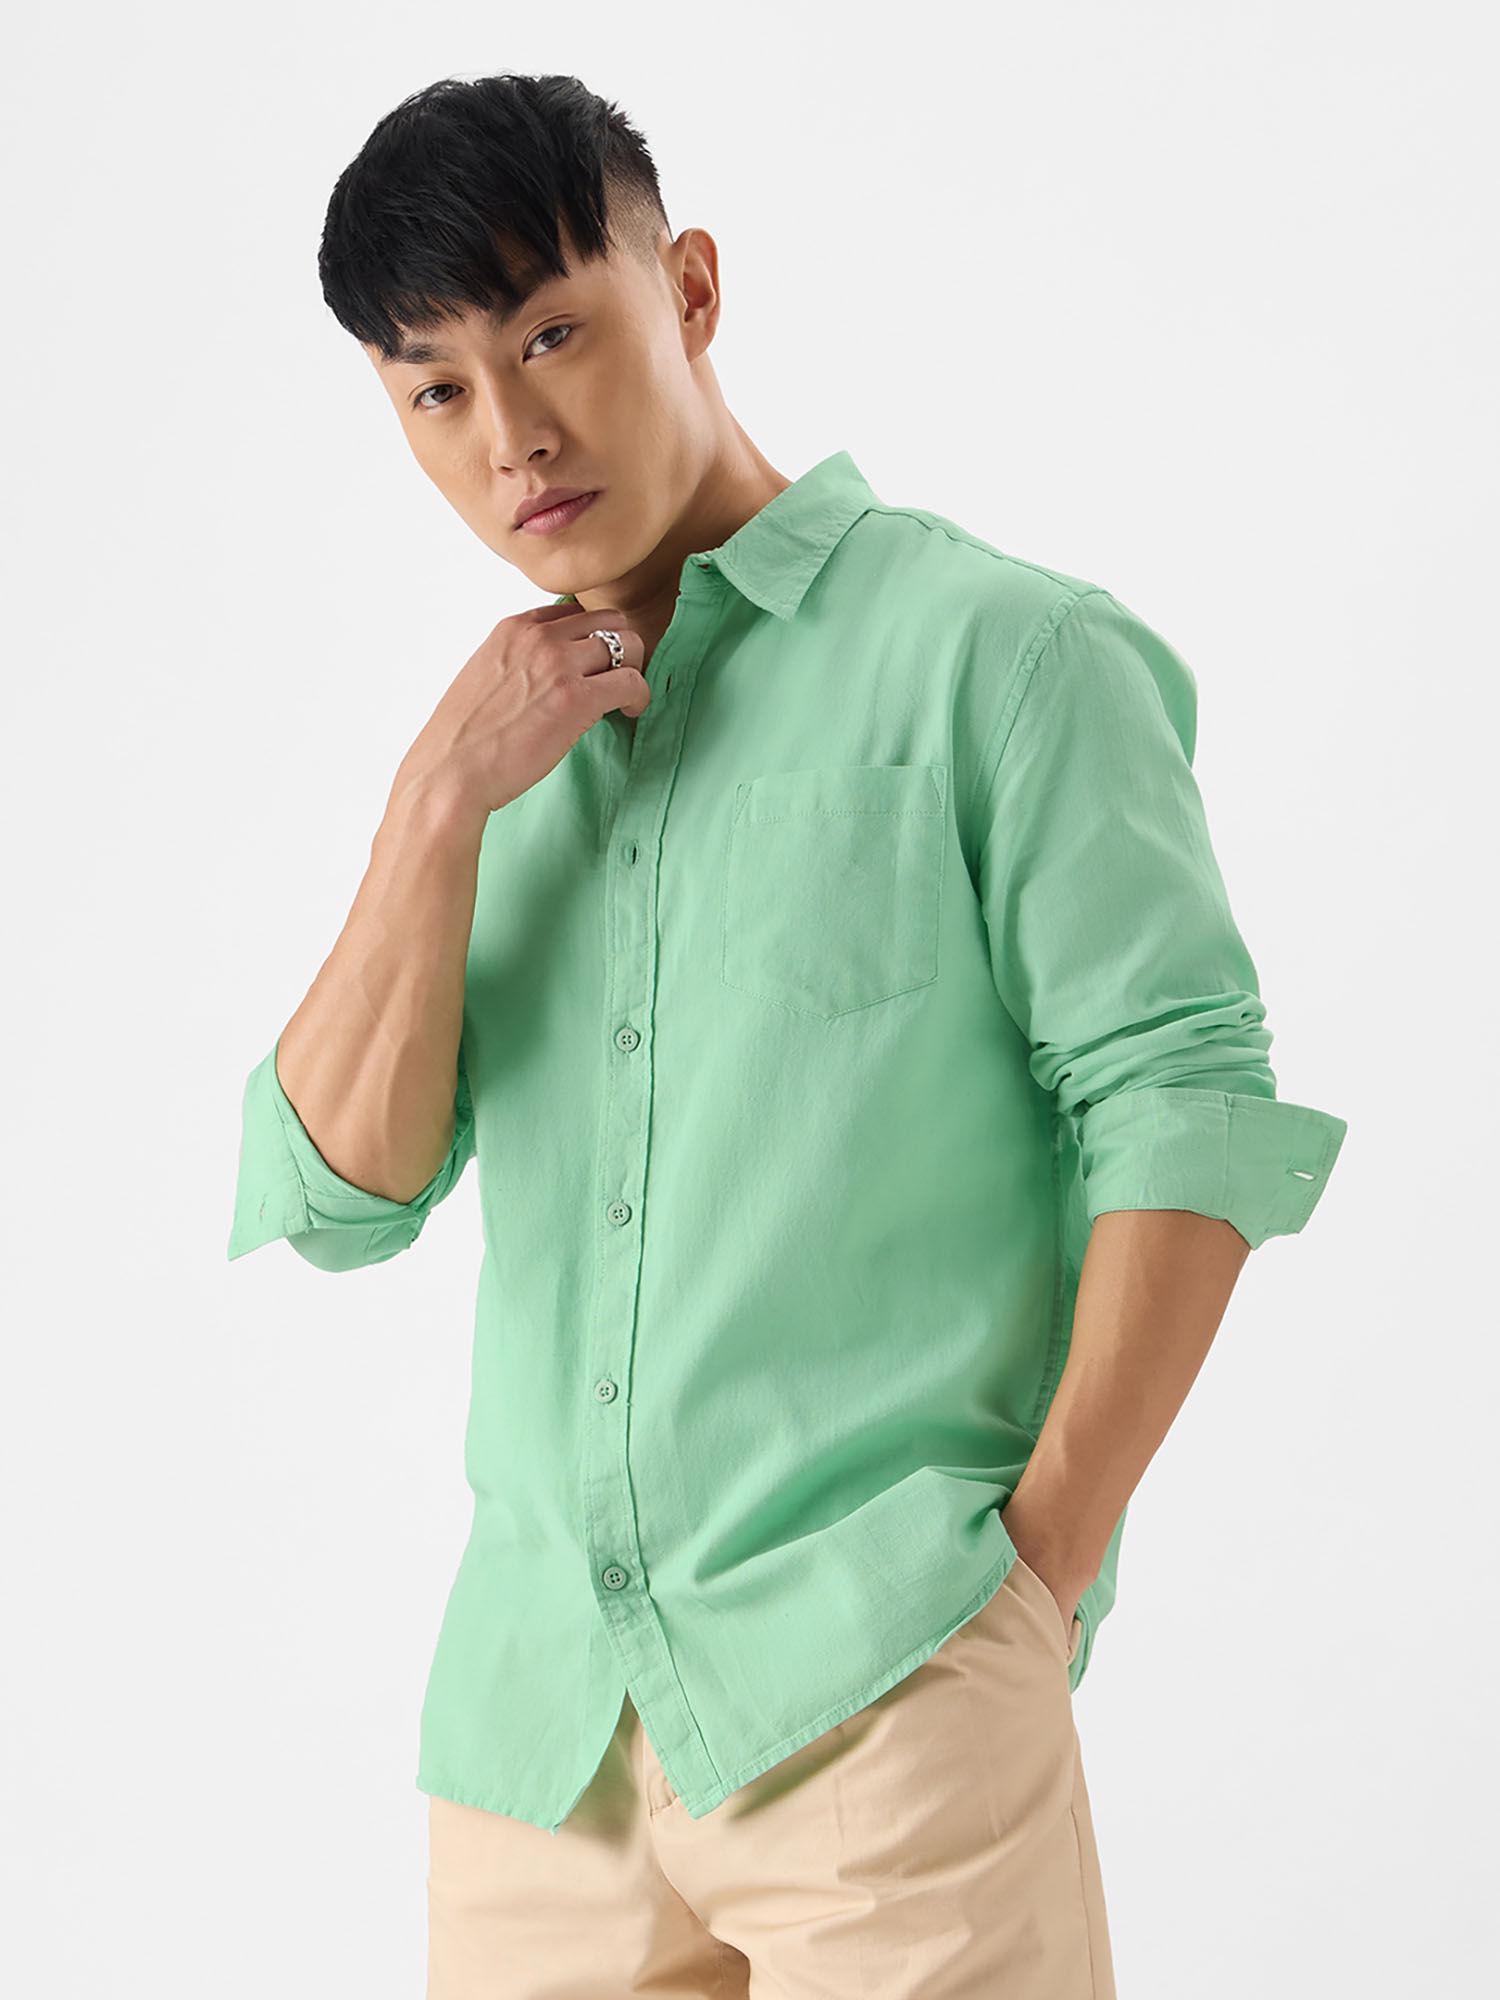 original linen : green cotton linen shirts